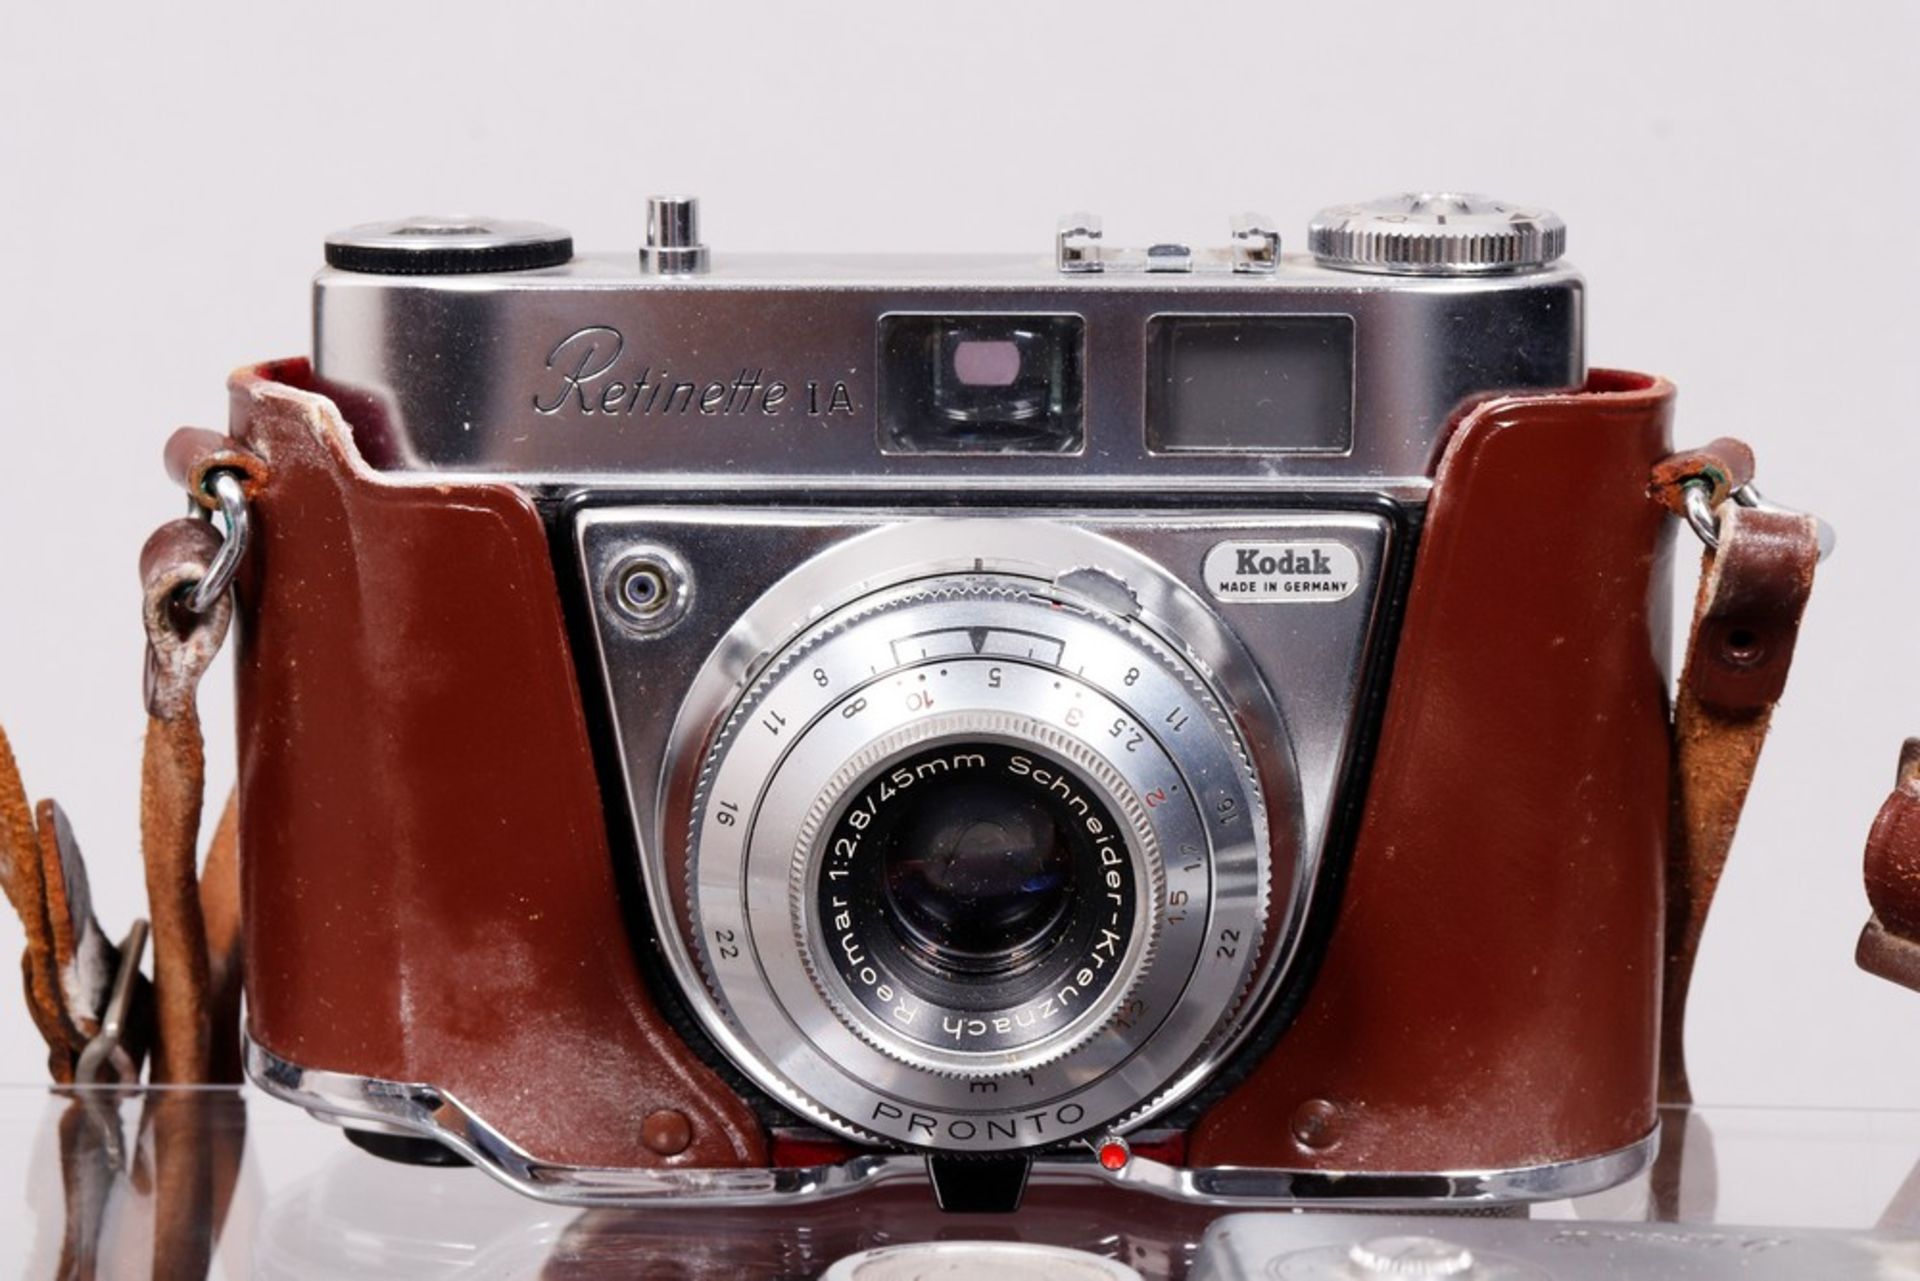 5 viewfinder cameras, Zeiss/Iloca/Kodak, 1950s/60s - Image 3 of 6